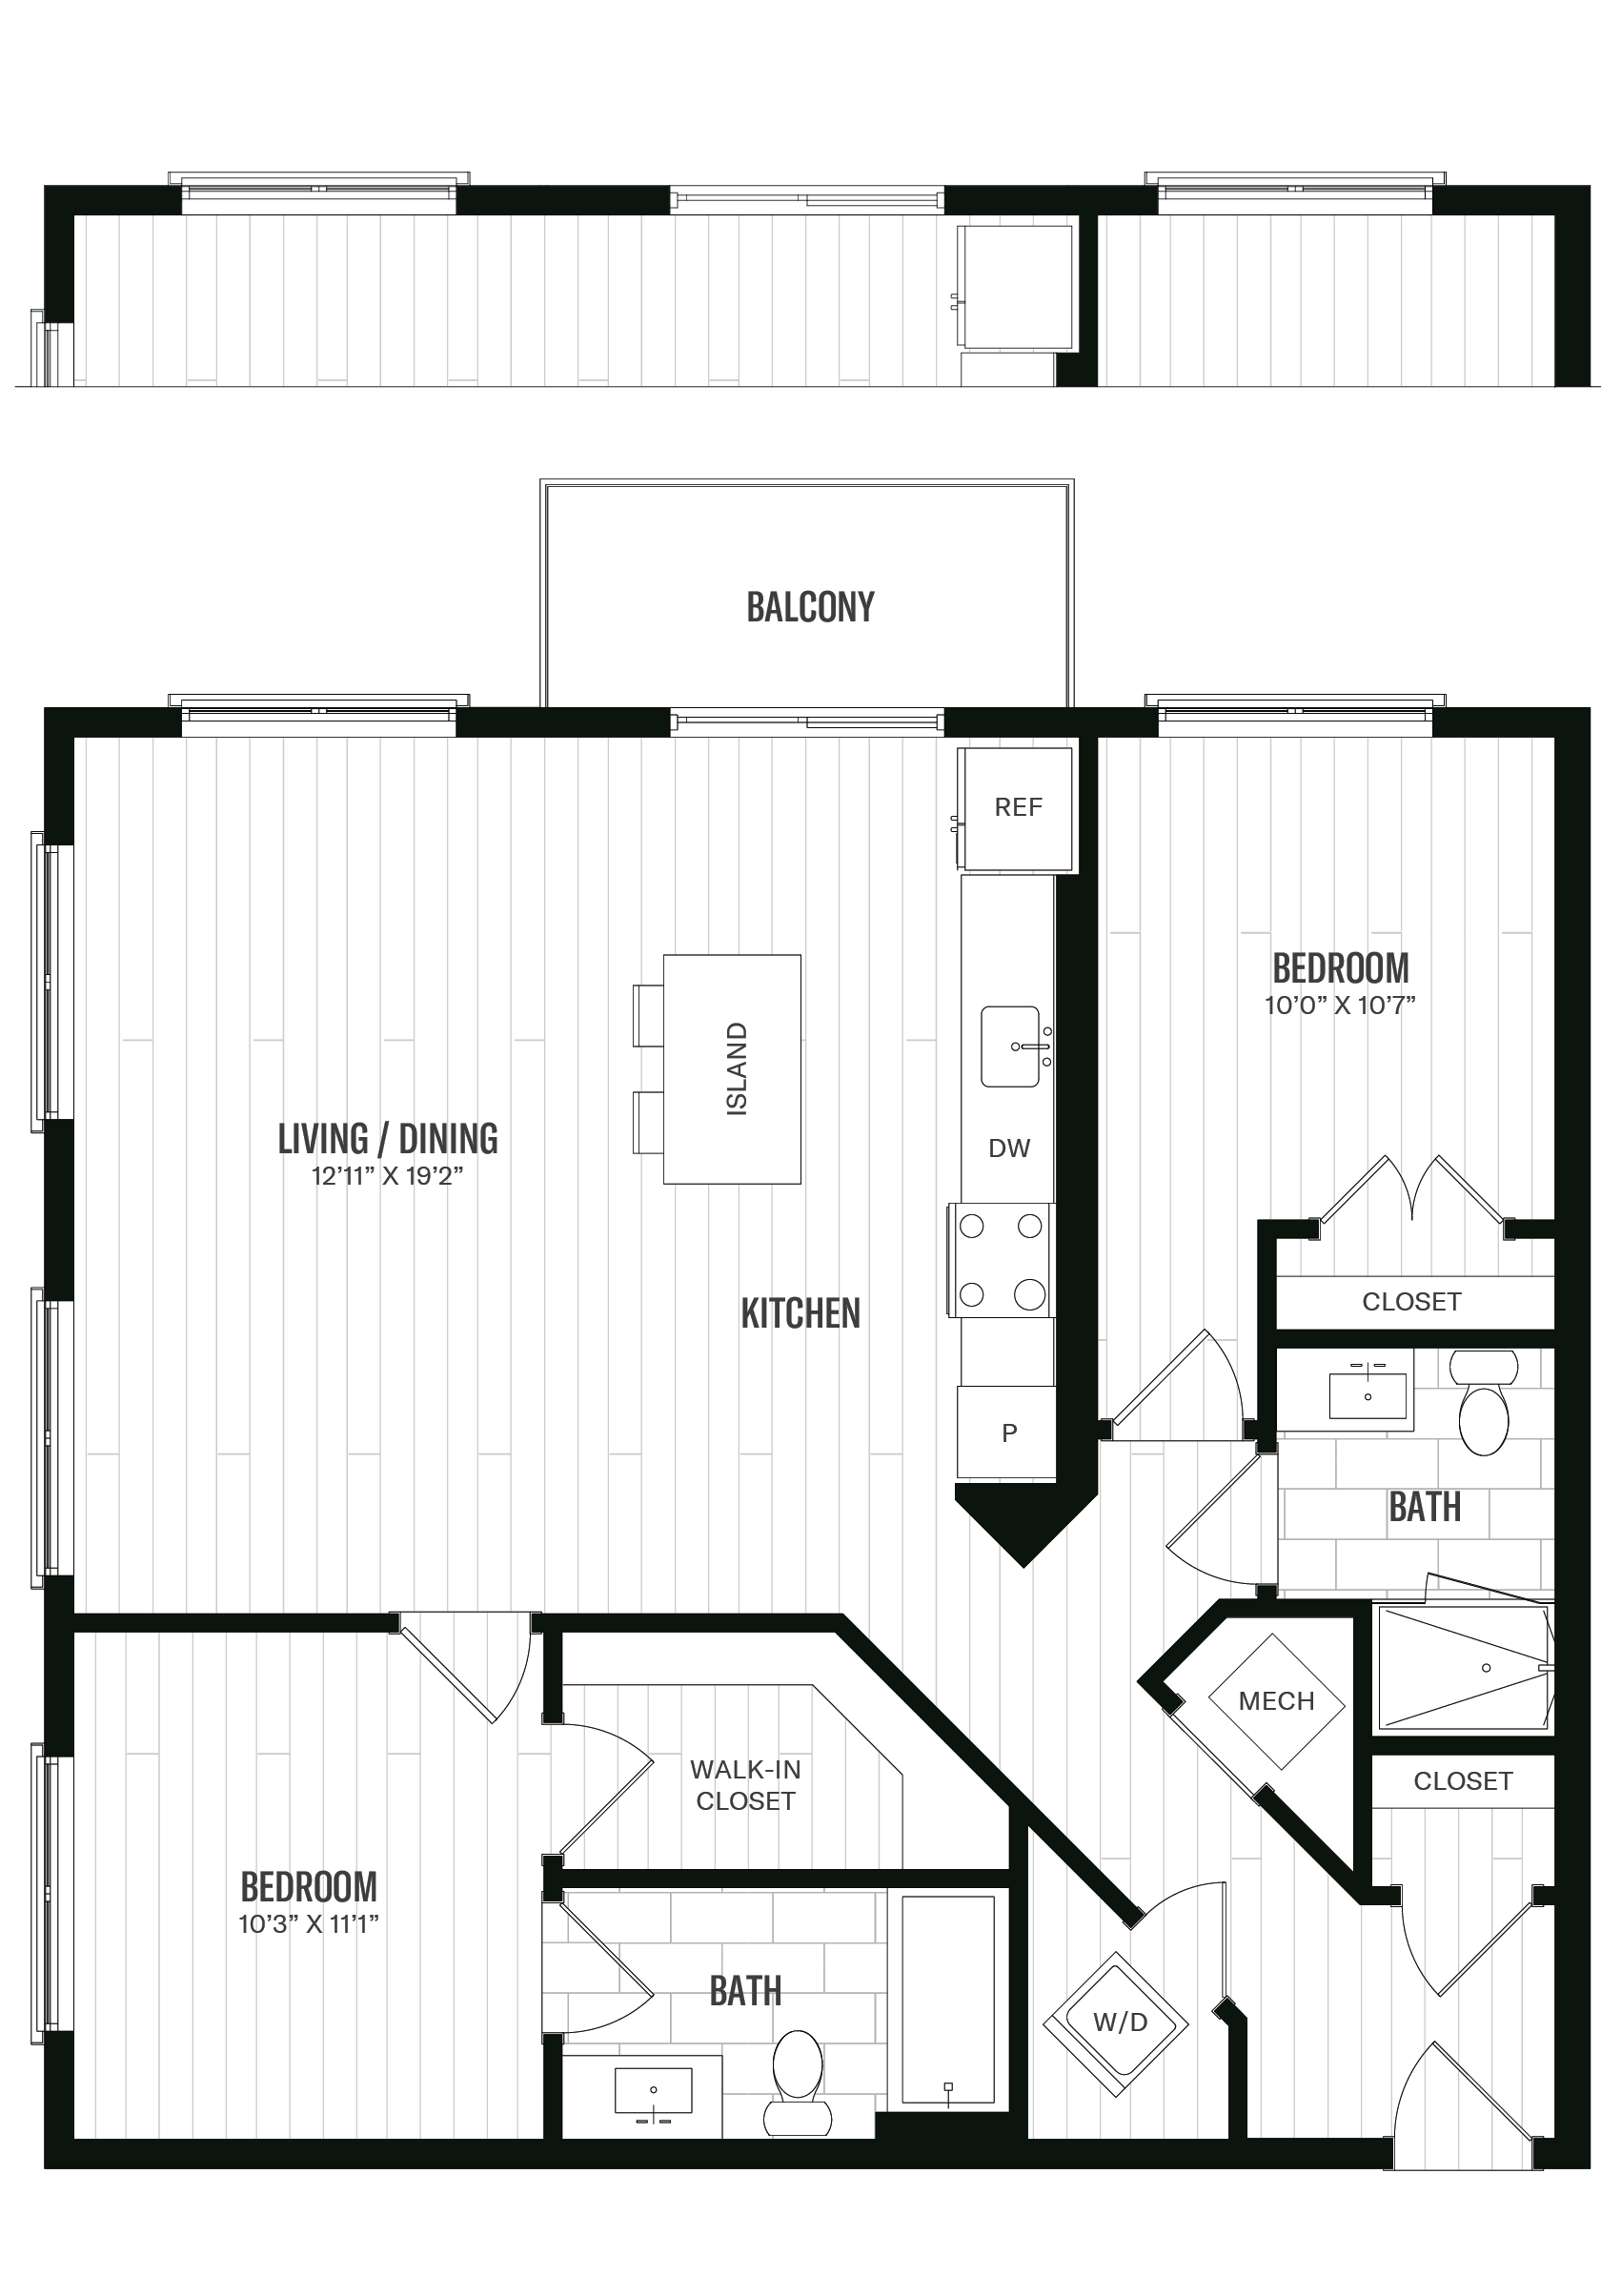 Floorplan image of unit 435